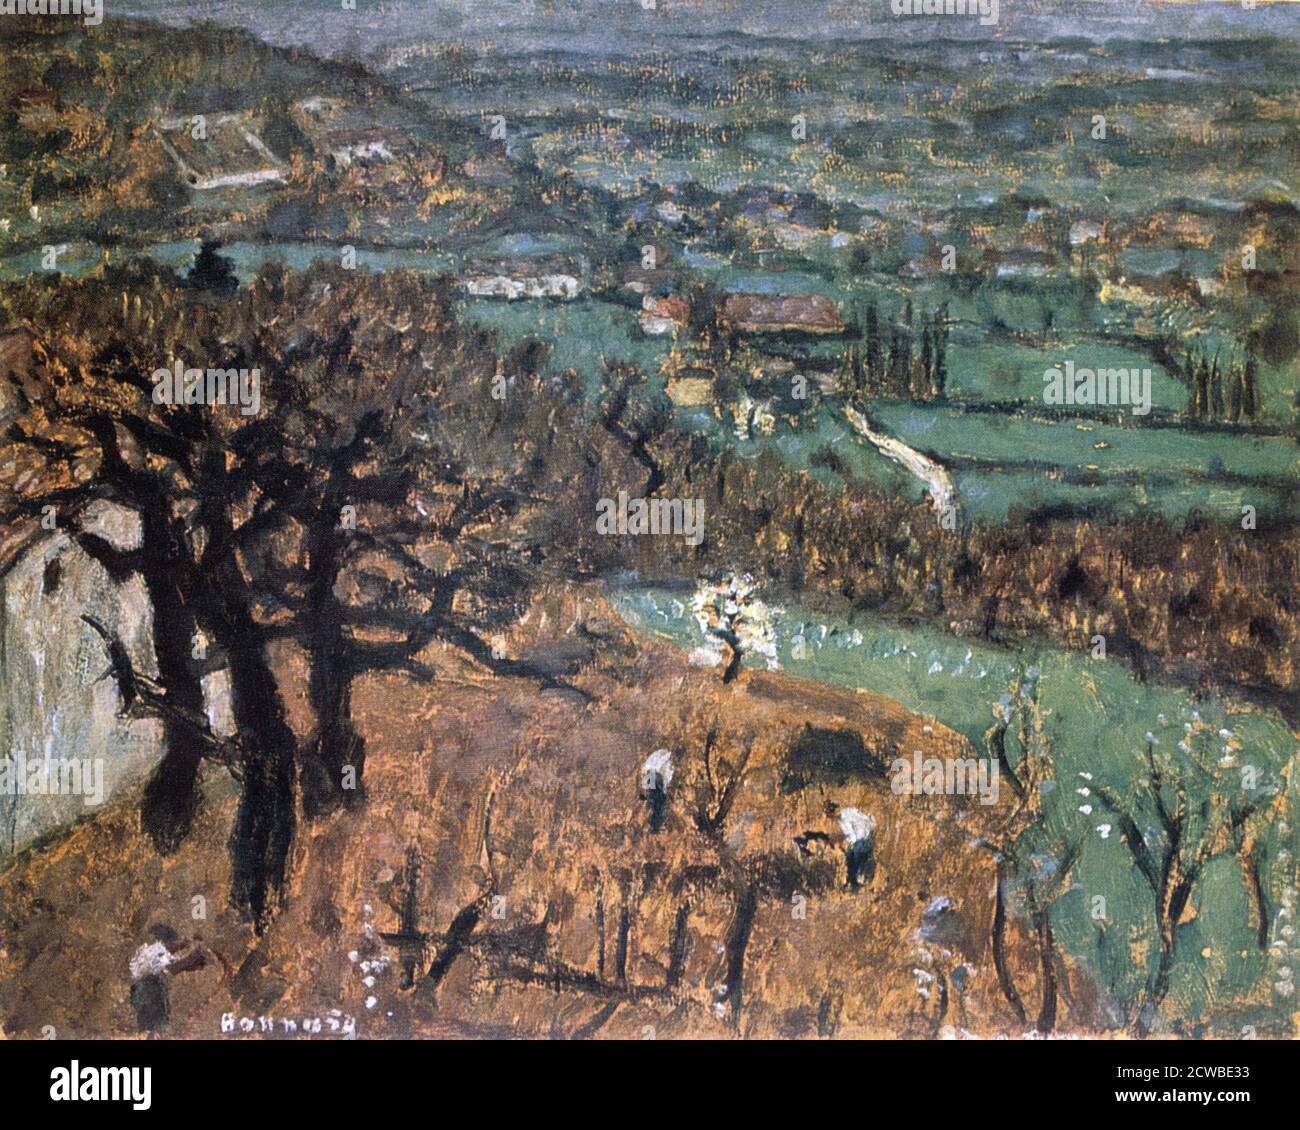 Dauphine Landscape', c1899. Künstler: Pierre Bonnard. Bonnard war ein französischer Maler, Illustrator und Grafiker, bekannt für die stilisierten dekorativen Qualitäten seiner Gemälde und seine kühne Verwendung von Farbe. Er war Gründungsmitglied der postimpressionistischen Gruppe der Avantgarde-Maler Les Nabis. Stockfoto